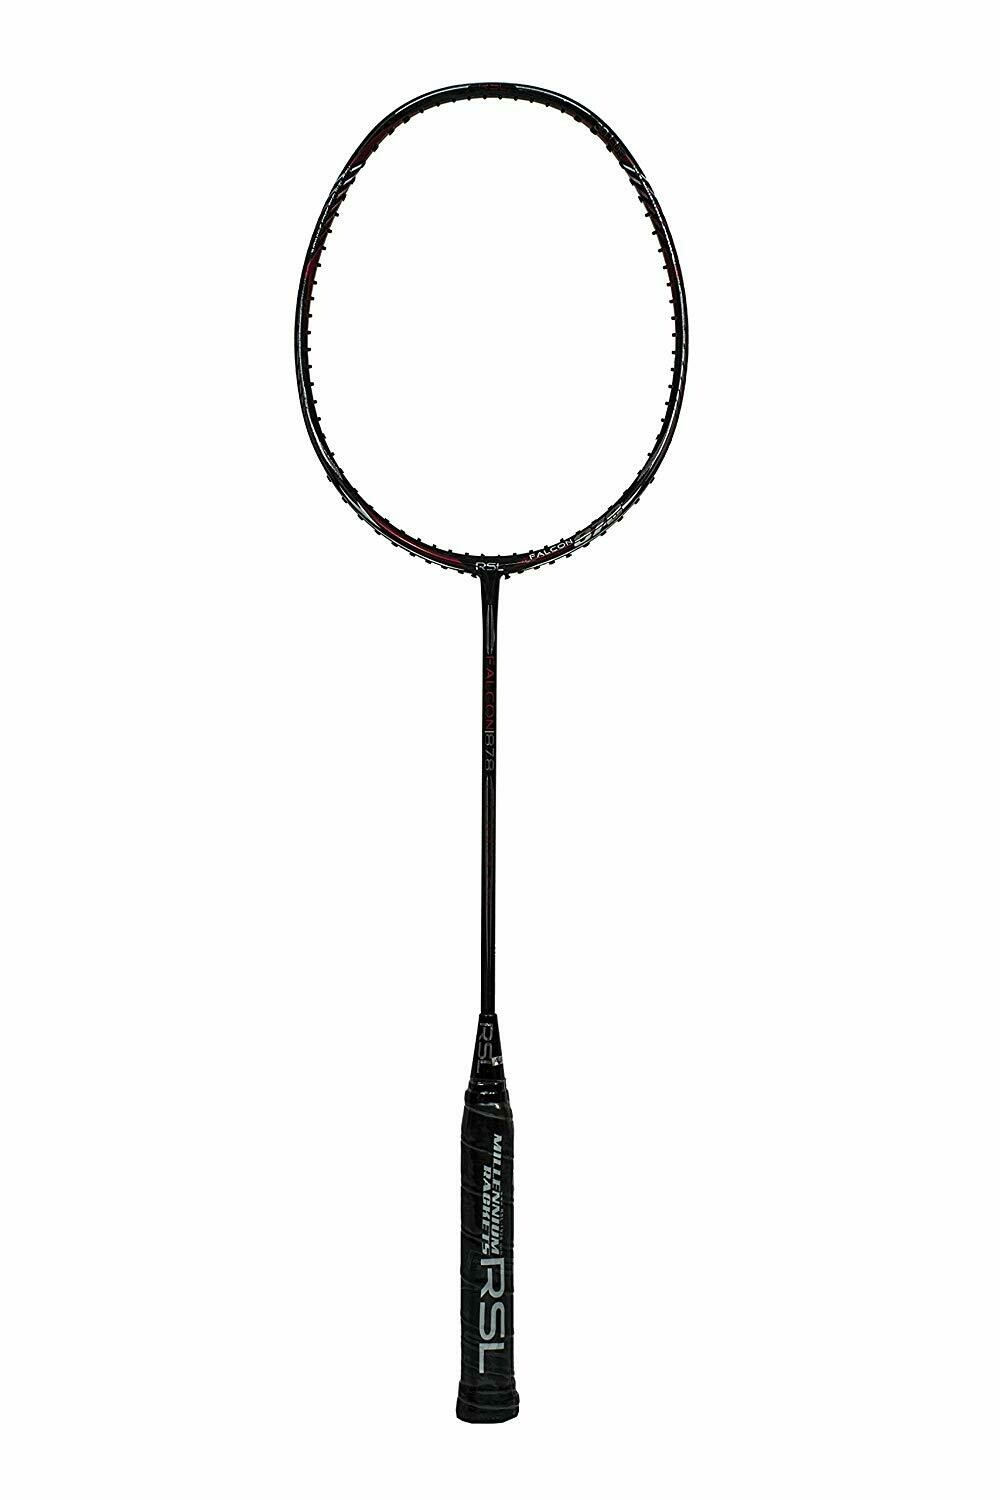 RSL Falcon 878- Badminton Racquet